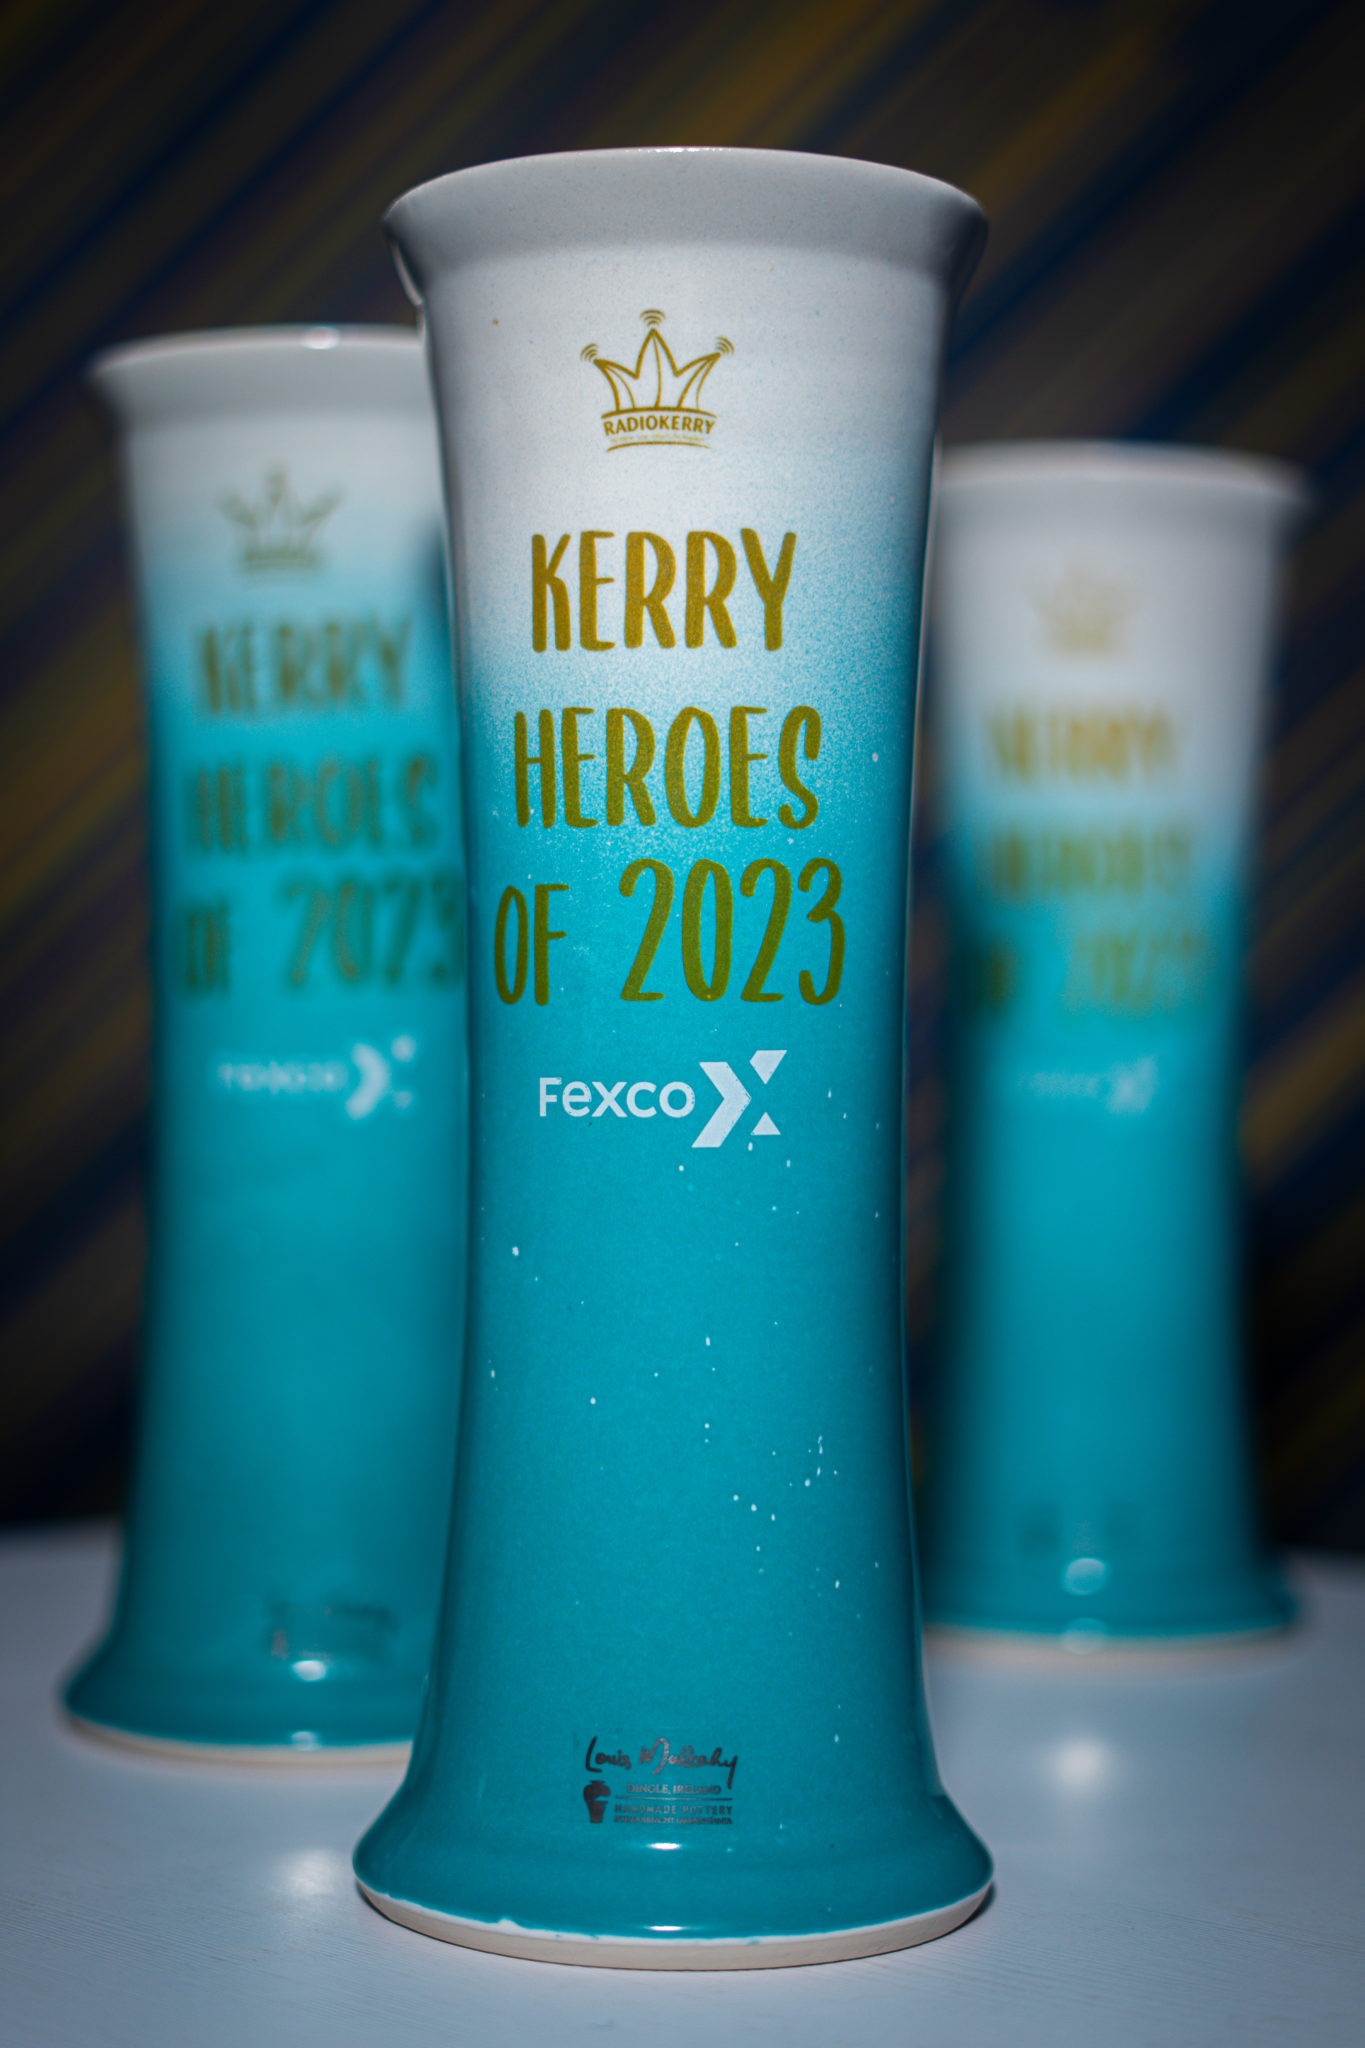 Kerry Heroes of 2023